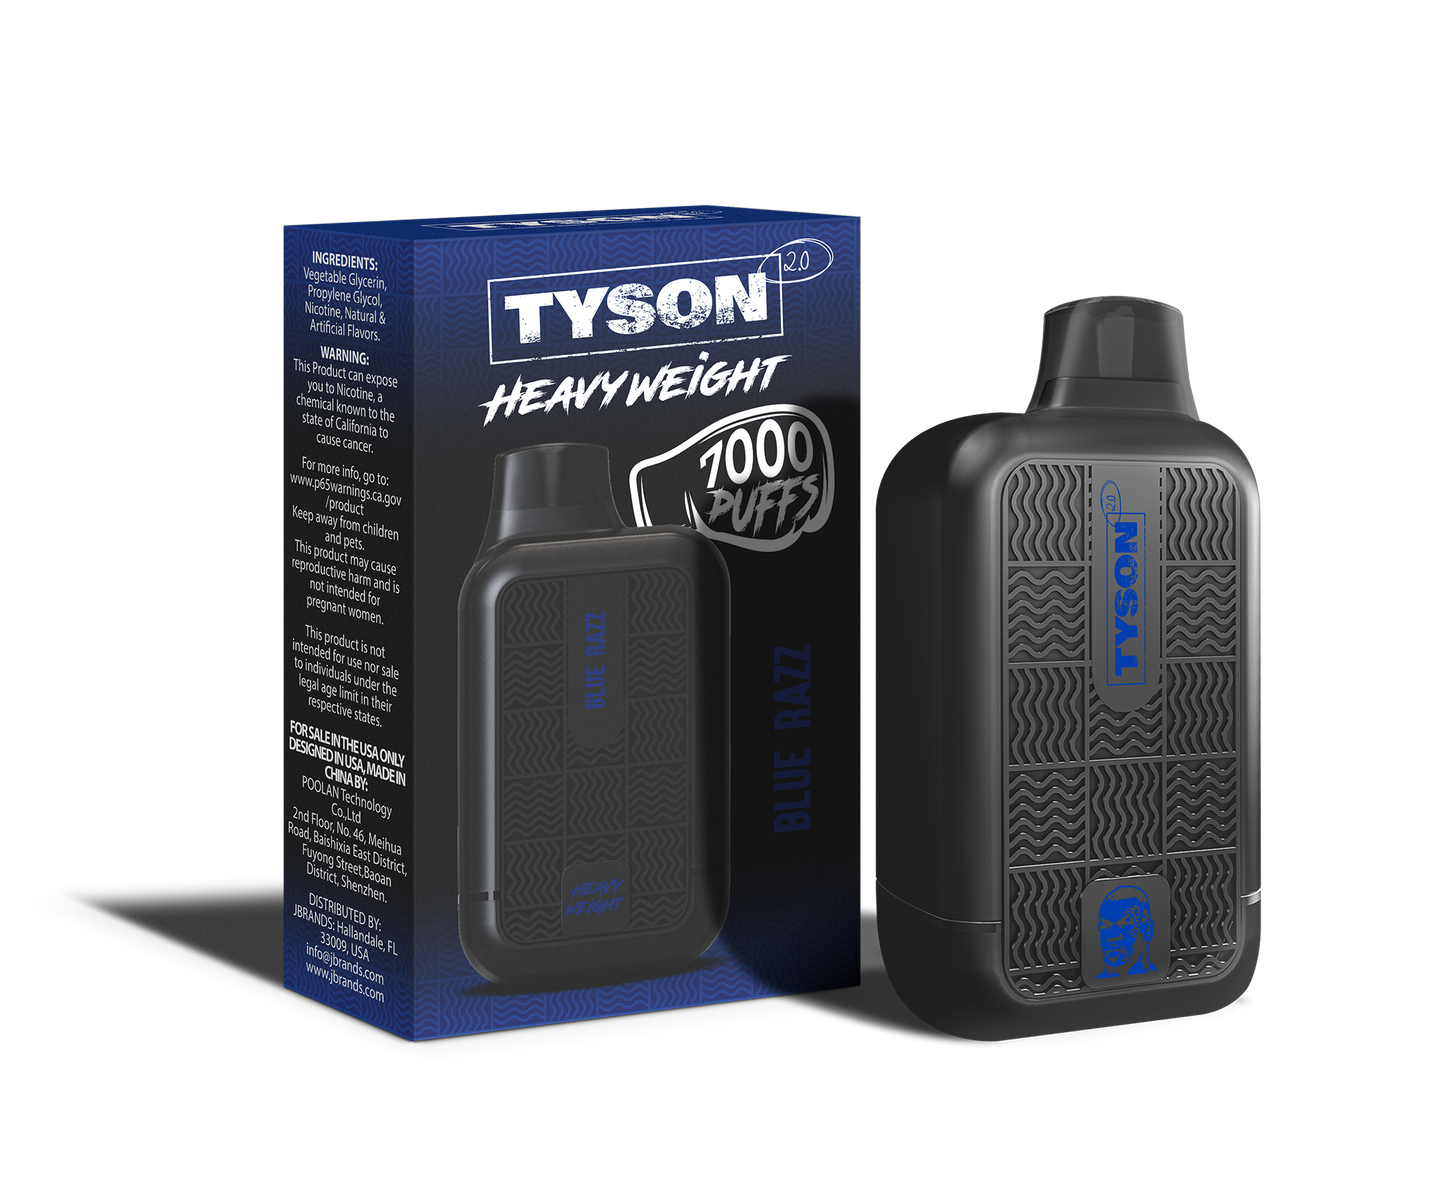 Tyson 2.0 Heavyweight 7000 Puffs Disposable Vape - Blue Razz